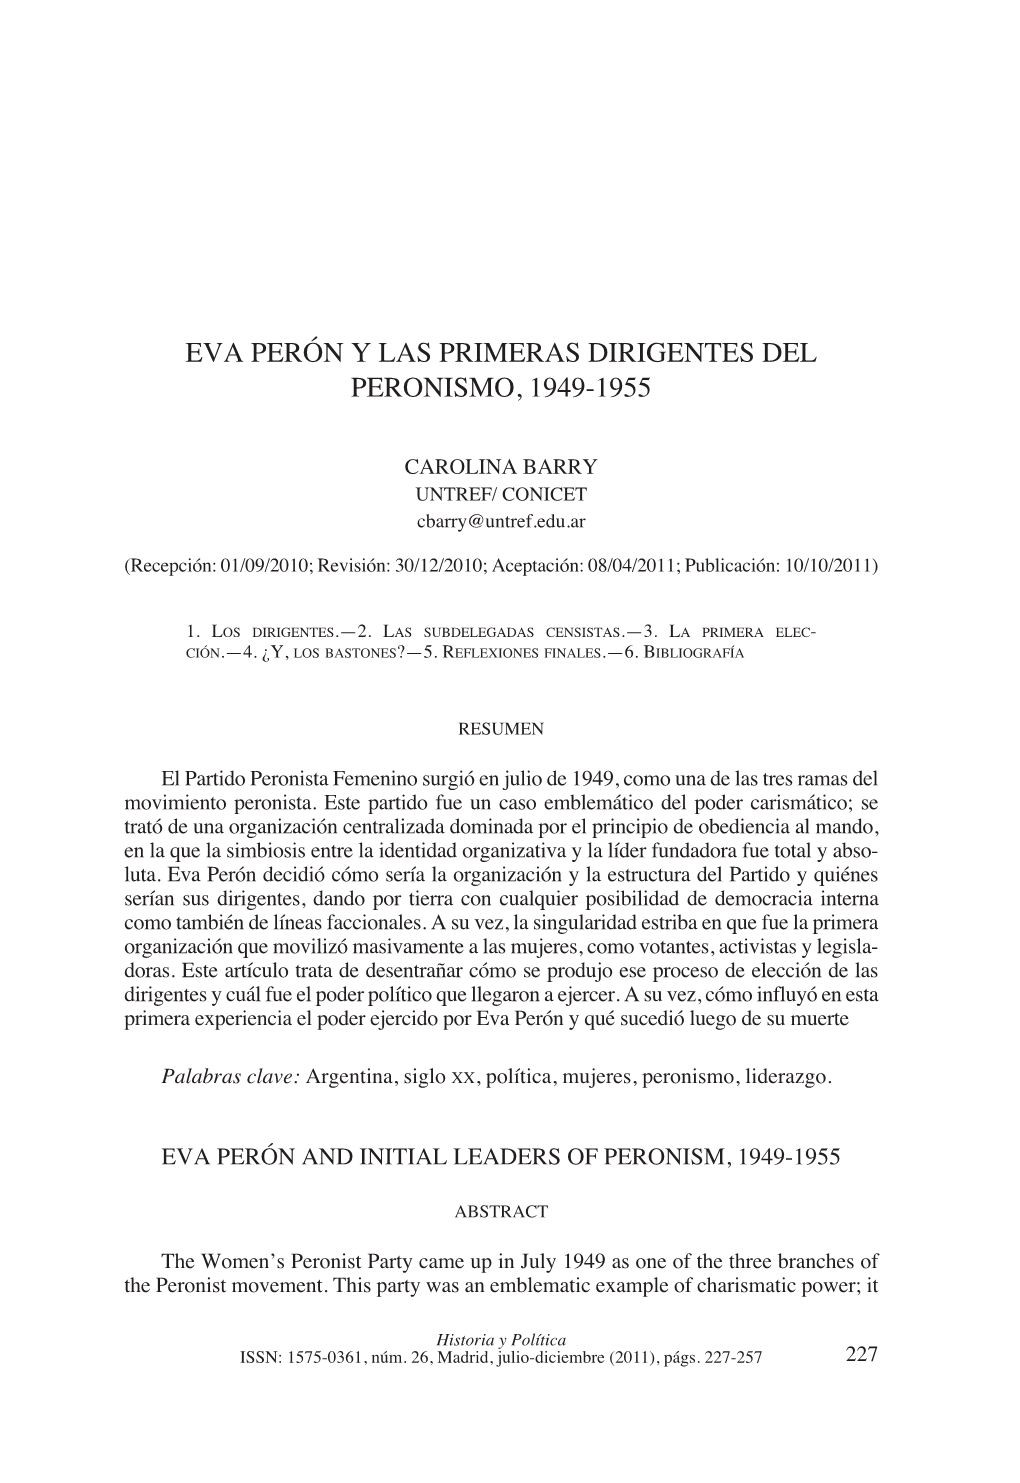 Eva Perón Y Las Primeras Dirigentes Del Peronismo, 1949-1955